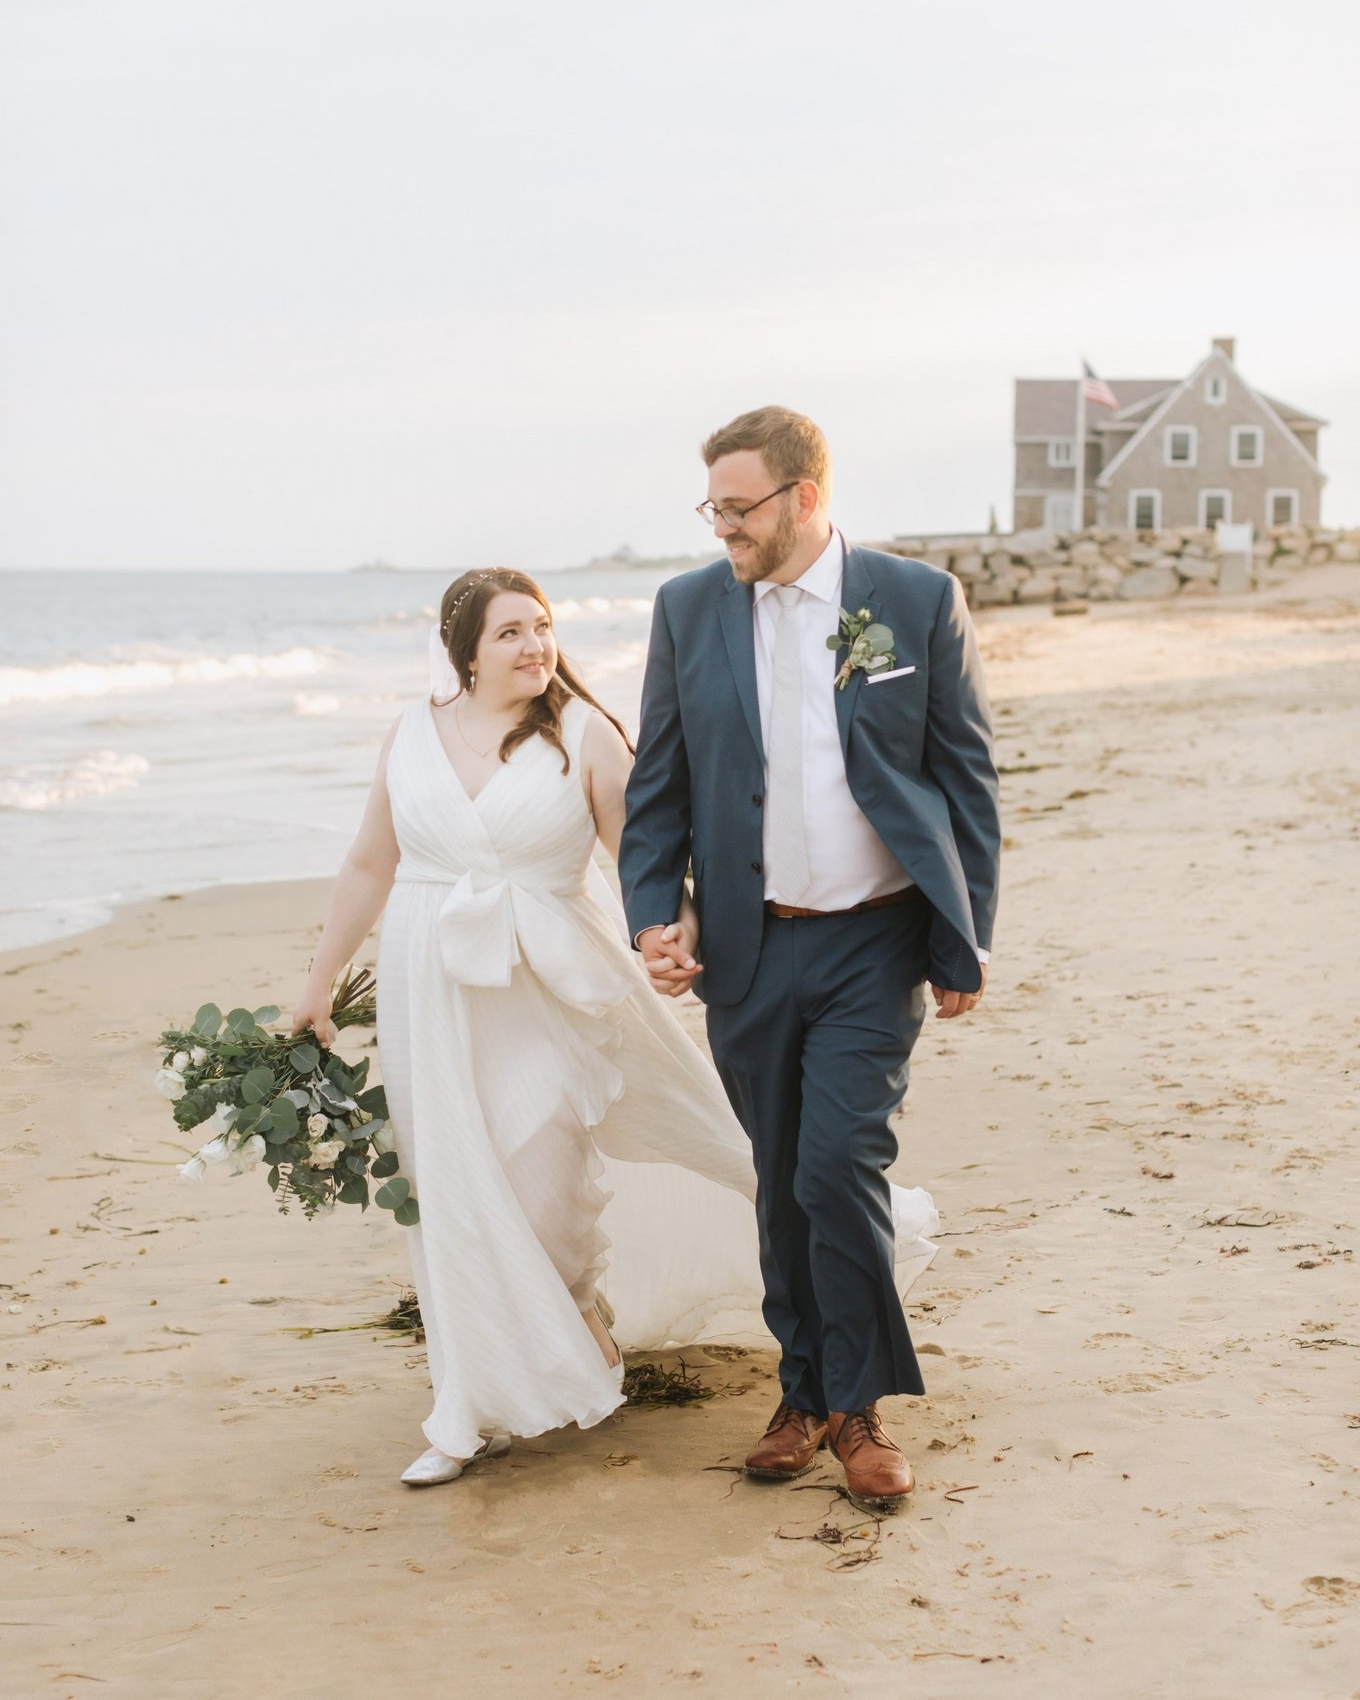 A Diy Backyard Beach Wedding In Westerly Rhode Island